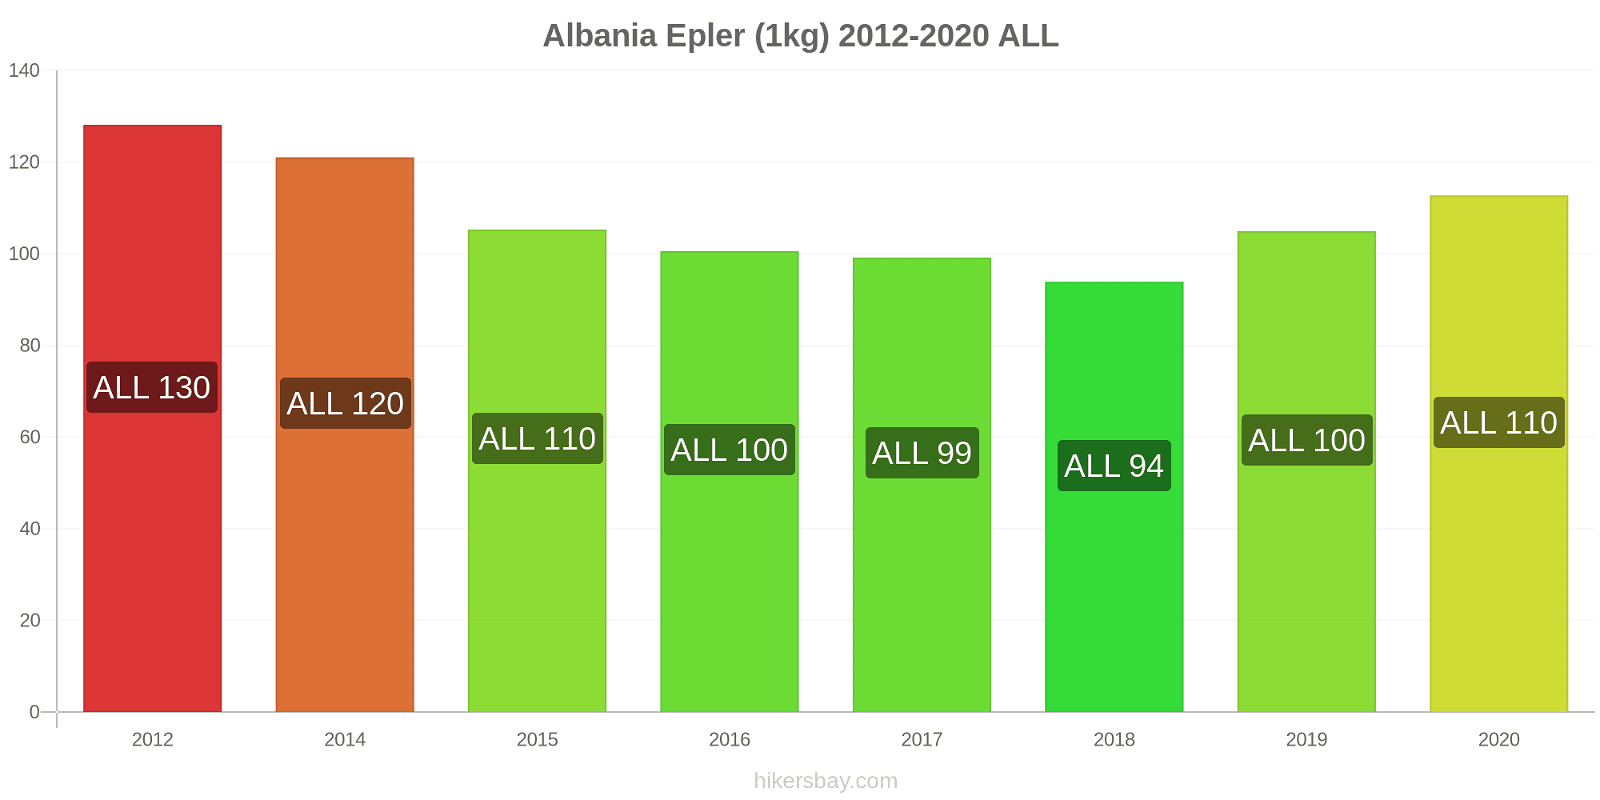 Albania prisendringer Epler (1kg) hikersbay.com